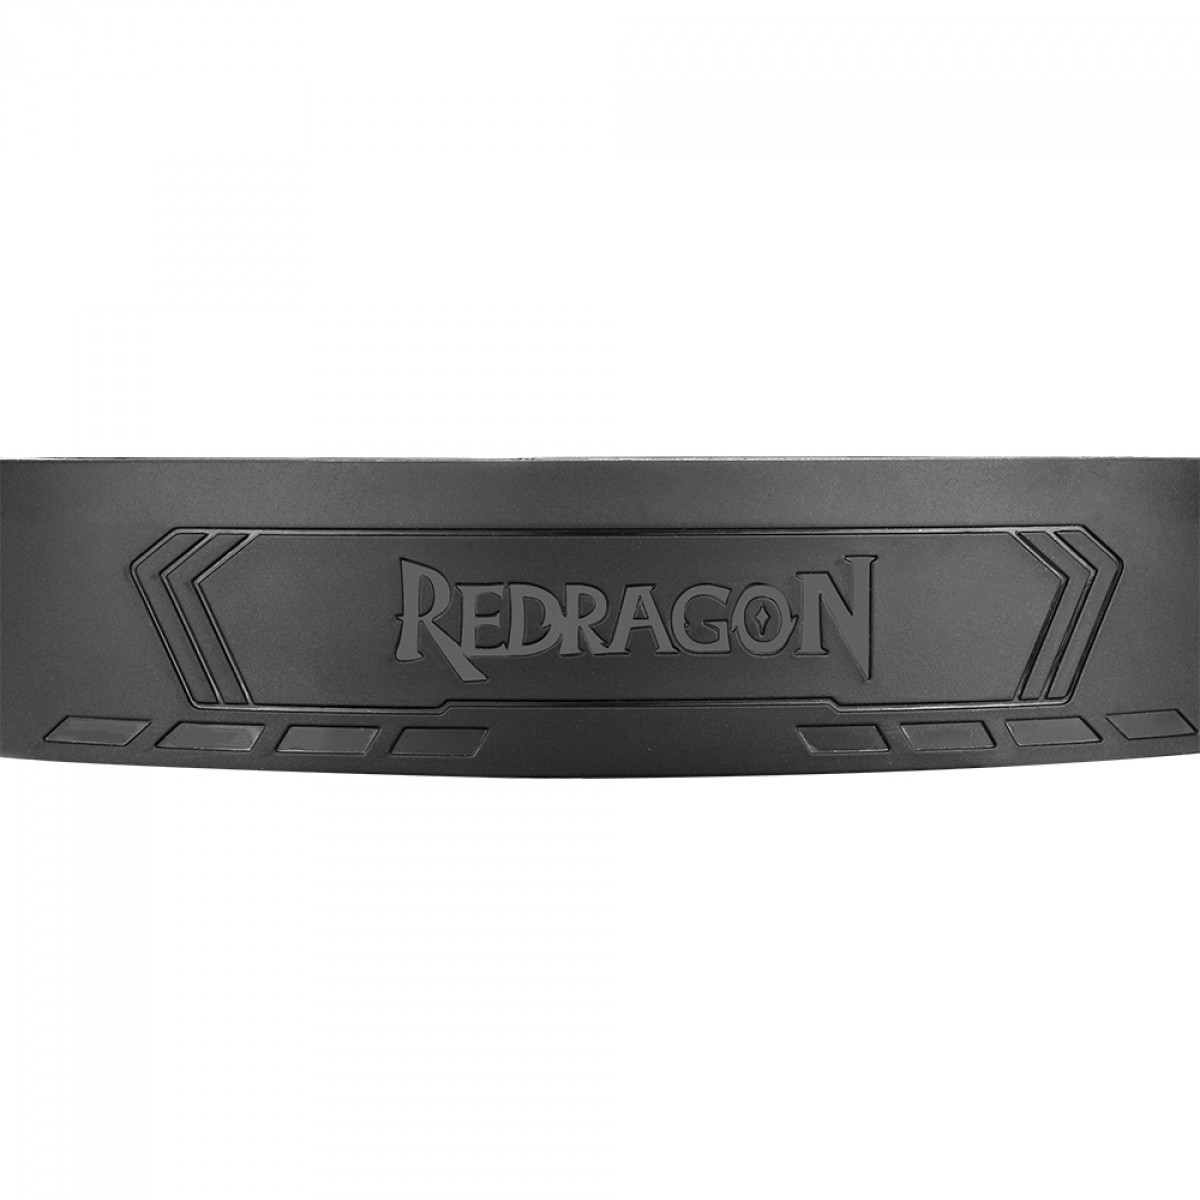 Headset Gamer Redragon Mento, 3.5mm + USB, Múltiplas Plataformas, RGB, Black, H270-RGB